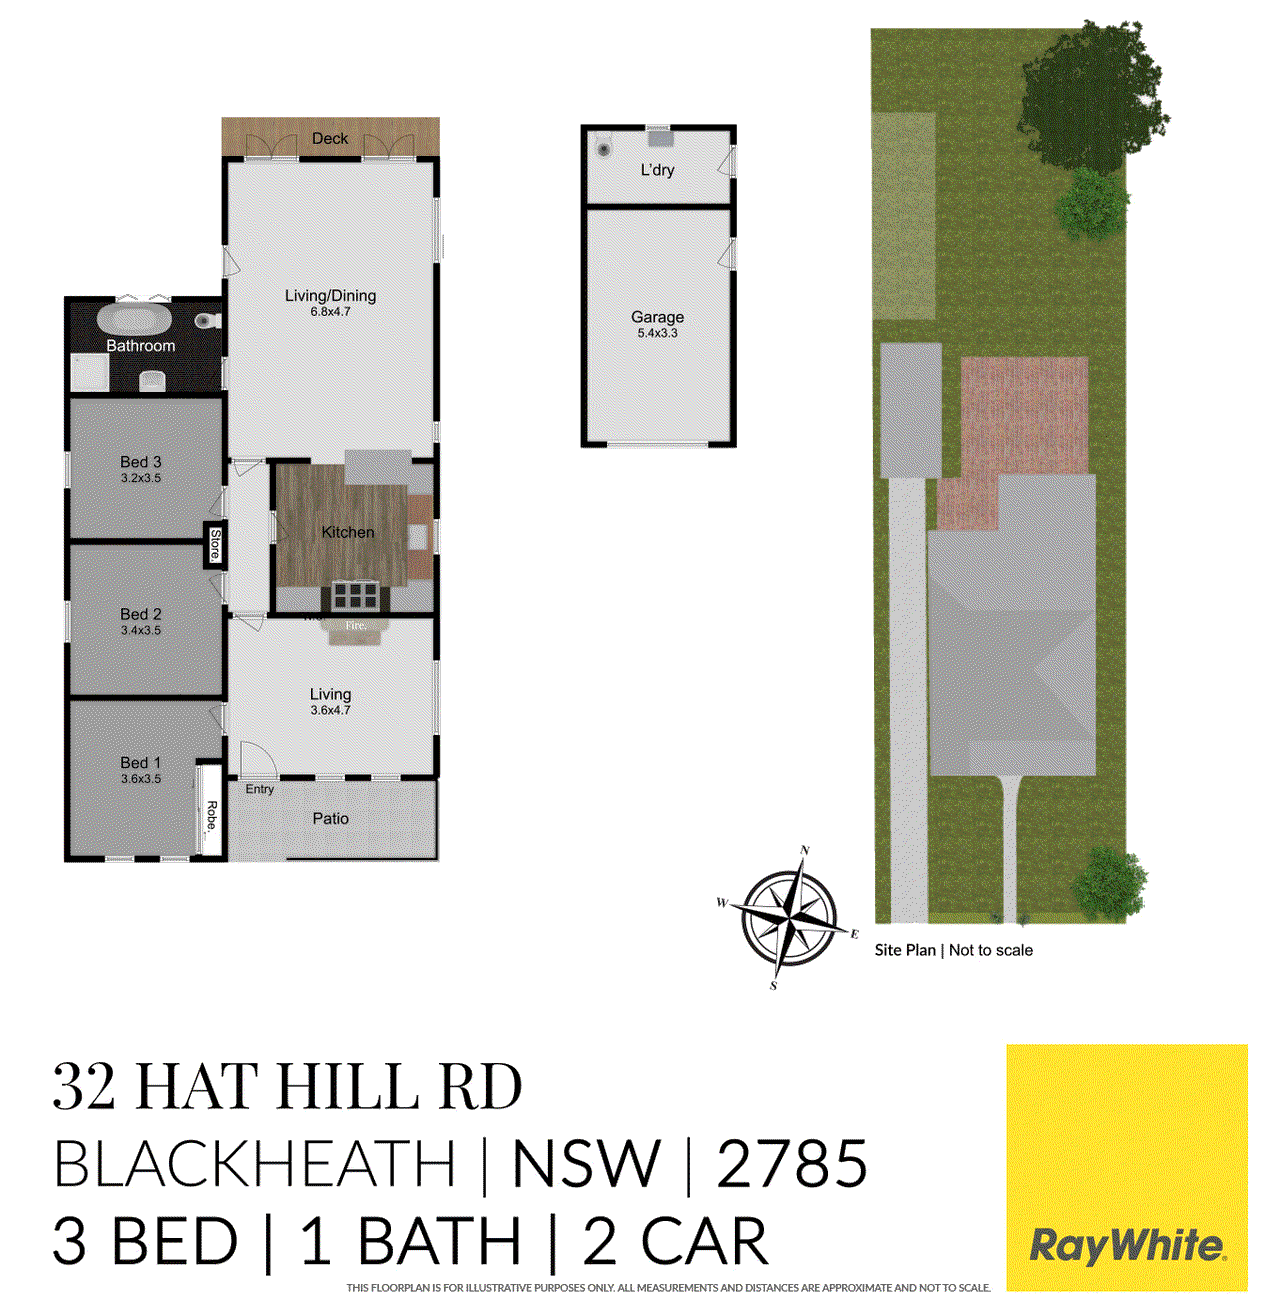 32 Hat Hill Road, BLACKHEATH, NSW 2785